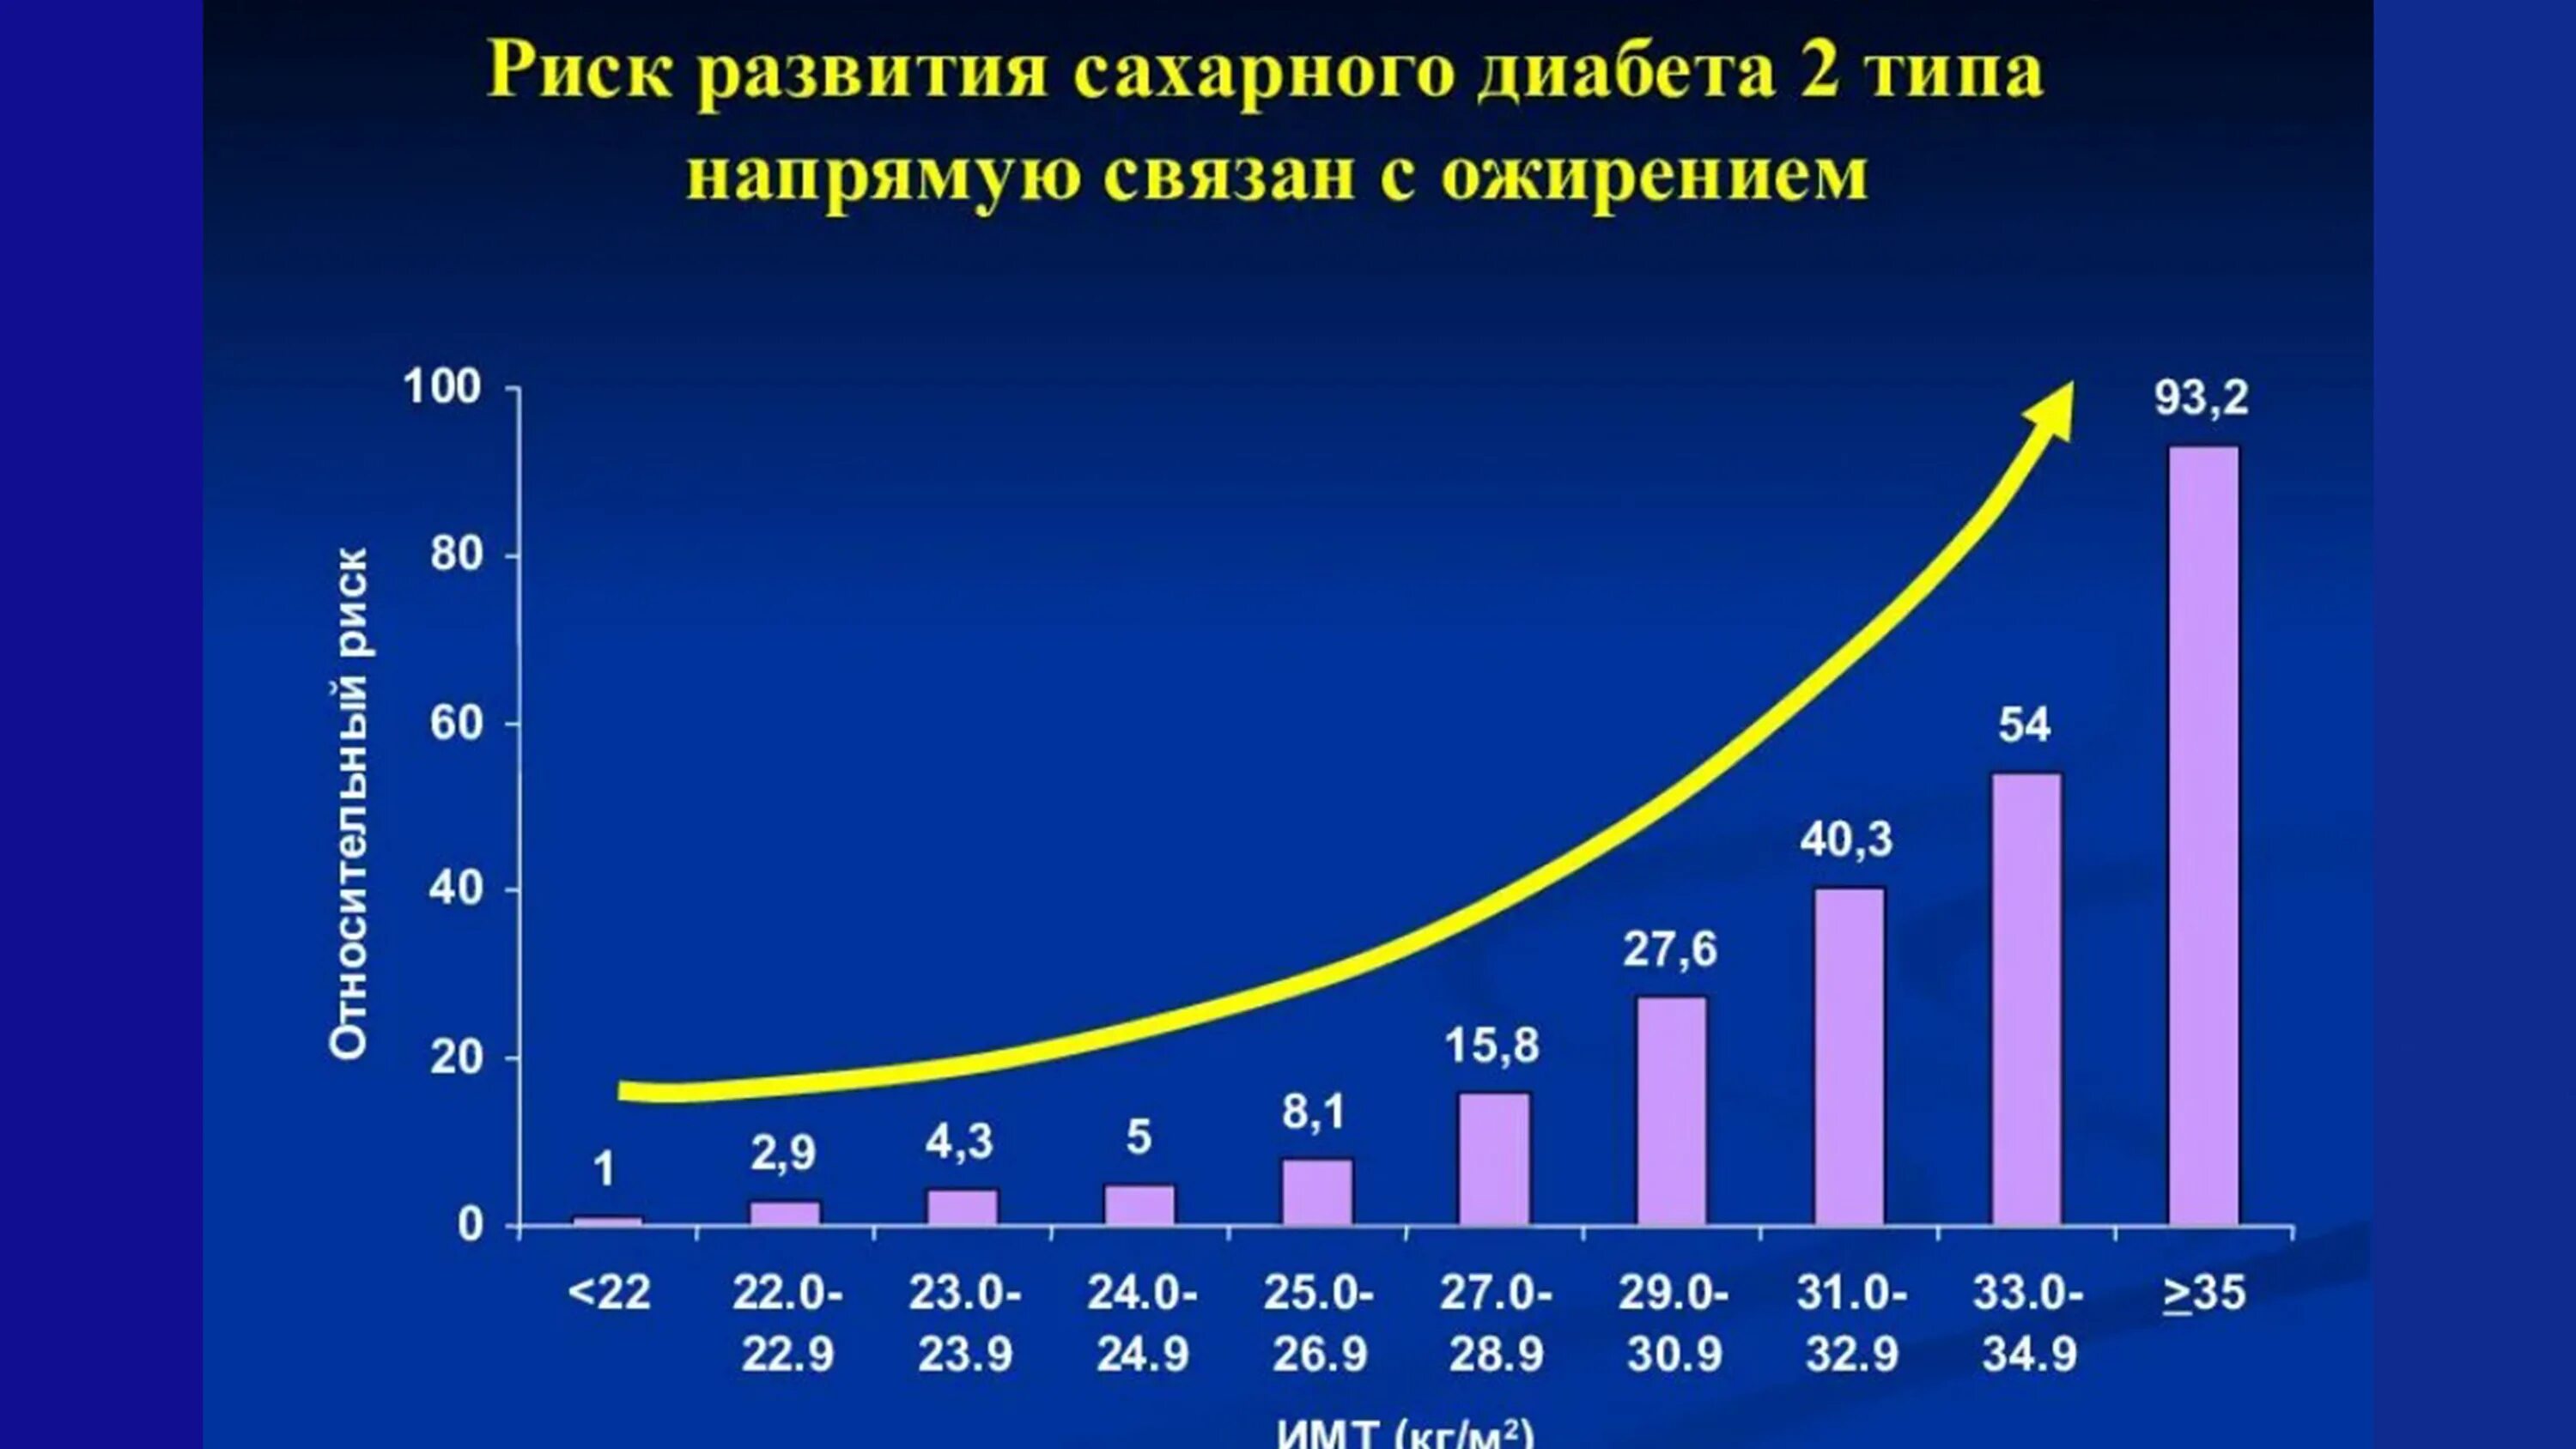 Распространенность сахарного диабета 2 типа в России статистика. Риск развития сахарного диабета 2 типа. Распространенность сахарного диабета в России диаграмма. Статистика заболеваемости диабетом 2 типа в России. Сколько больных сахарным